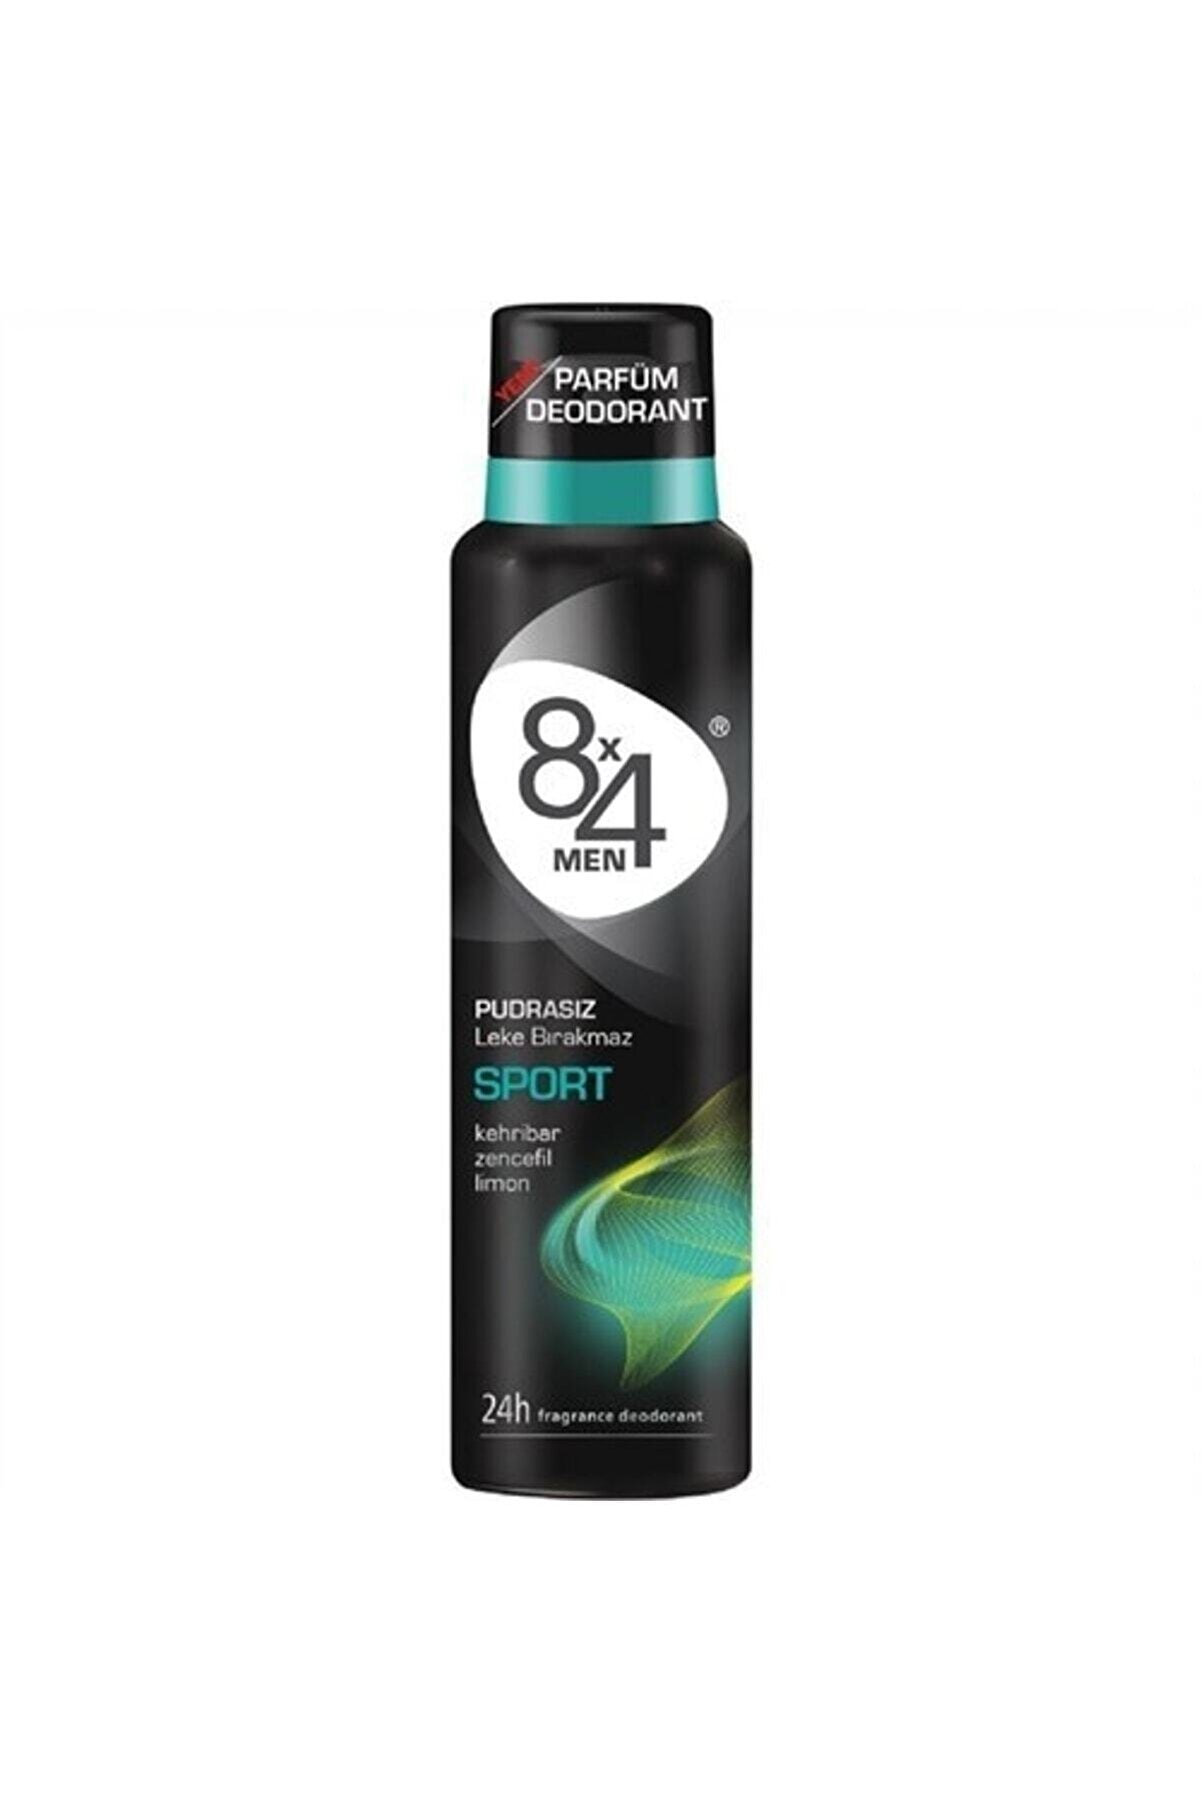 8x4 Deodorant 150ml Sport